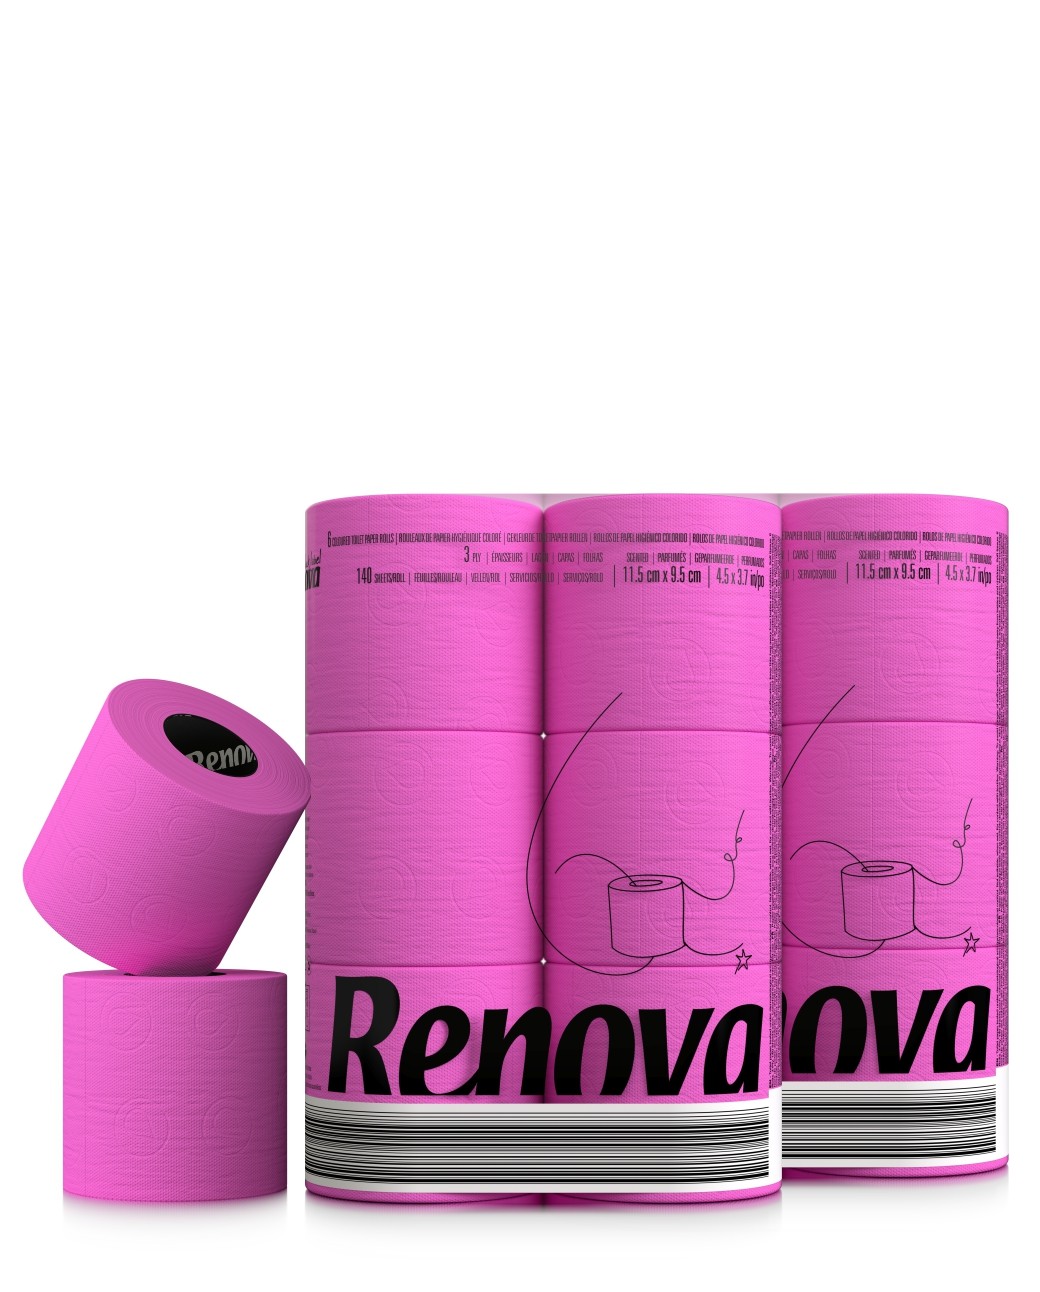 Розовая туалетная бумага. Туалетная бумага Renova 2 слоя 6 рулонов, оранжевая.